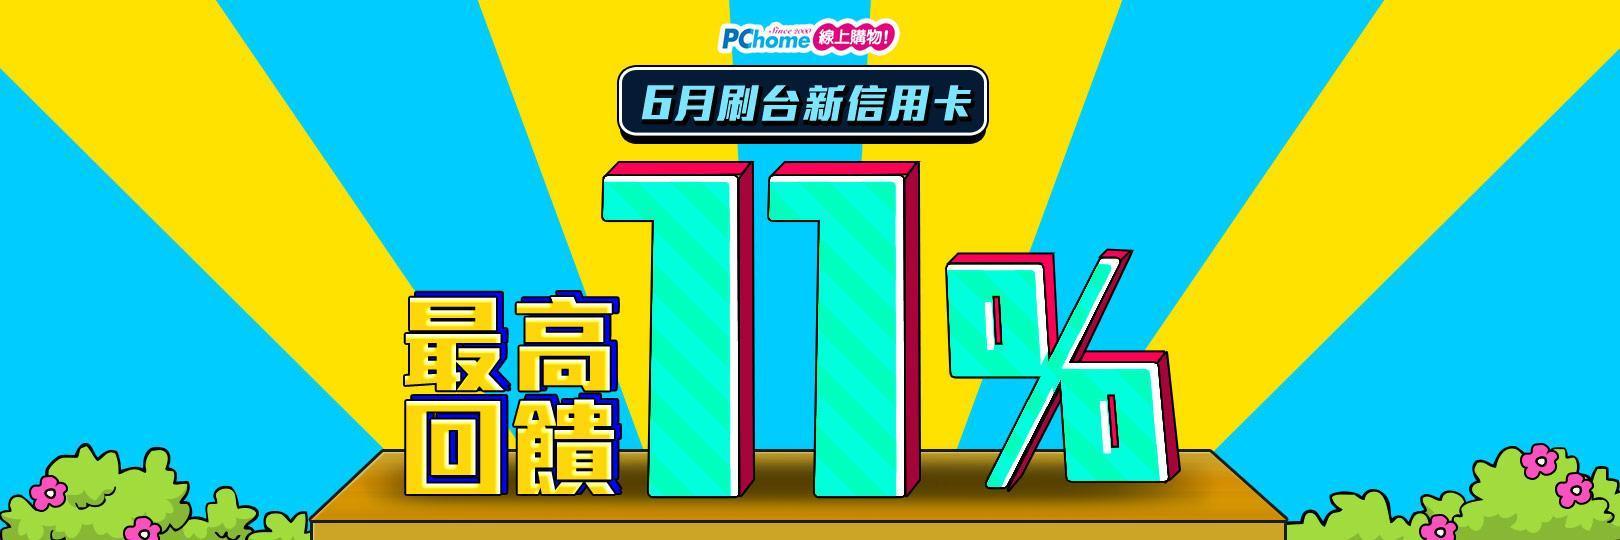 宅家安心逛 PChome22週年慶 刷台新信用卡享最高11%